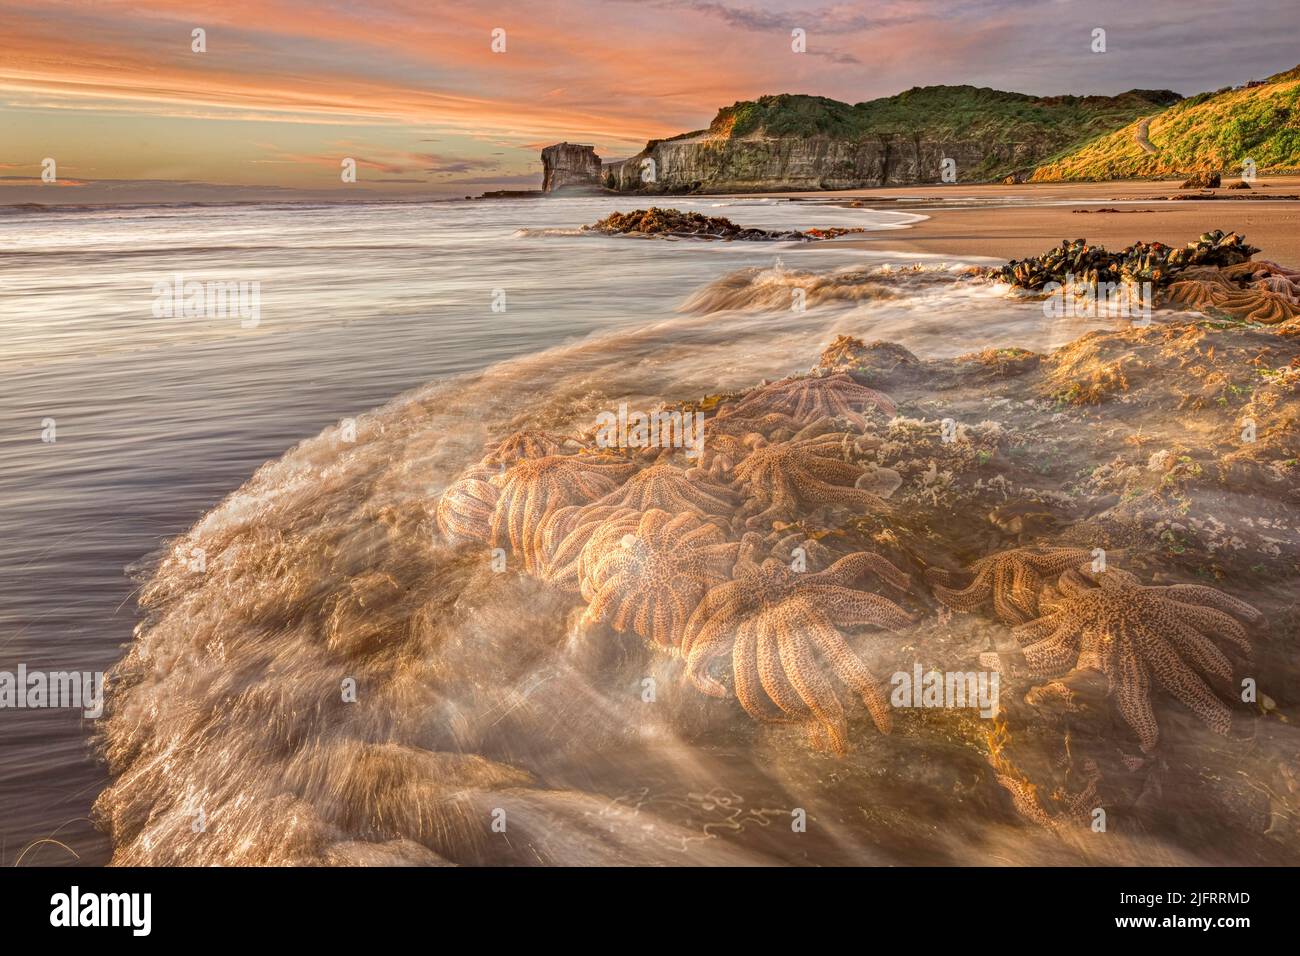 Ankommende Gezeiten wäschen über Seestern auf den Felsen, Maukaitia Bay Sunset, Muriwai, Auckland, Neuseeland, Kredit:Robin Bush / Avalon Stockfoto